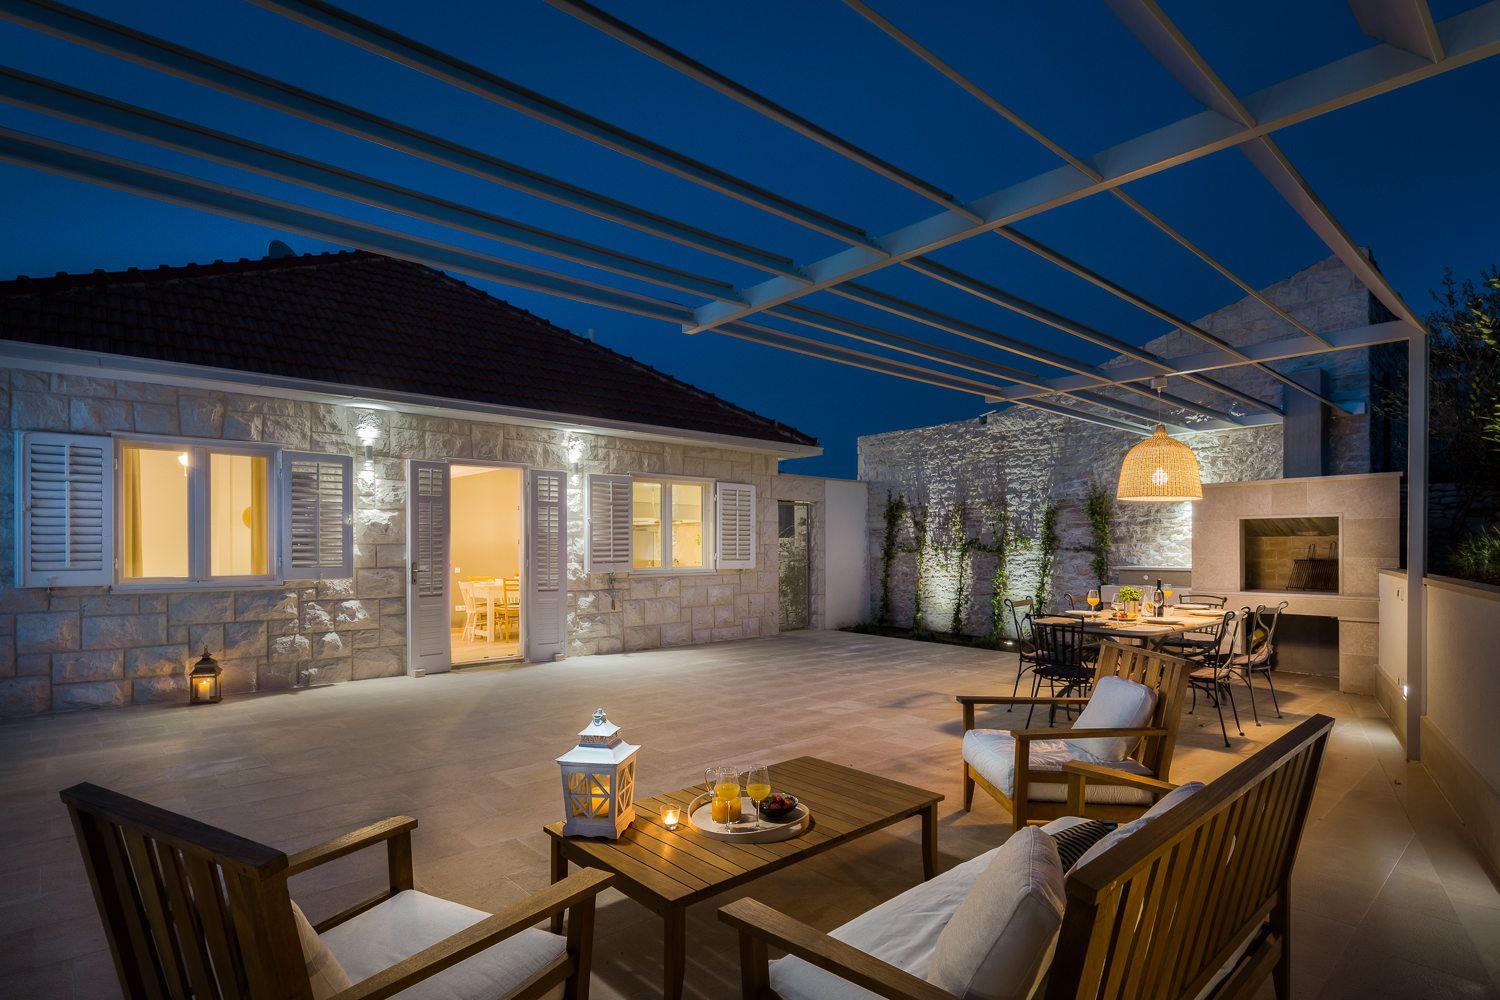 Ferienhaus mit Privatpool für 8 Personen ca.  Ferienhaus in Dalmatien